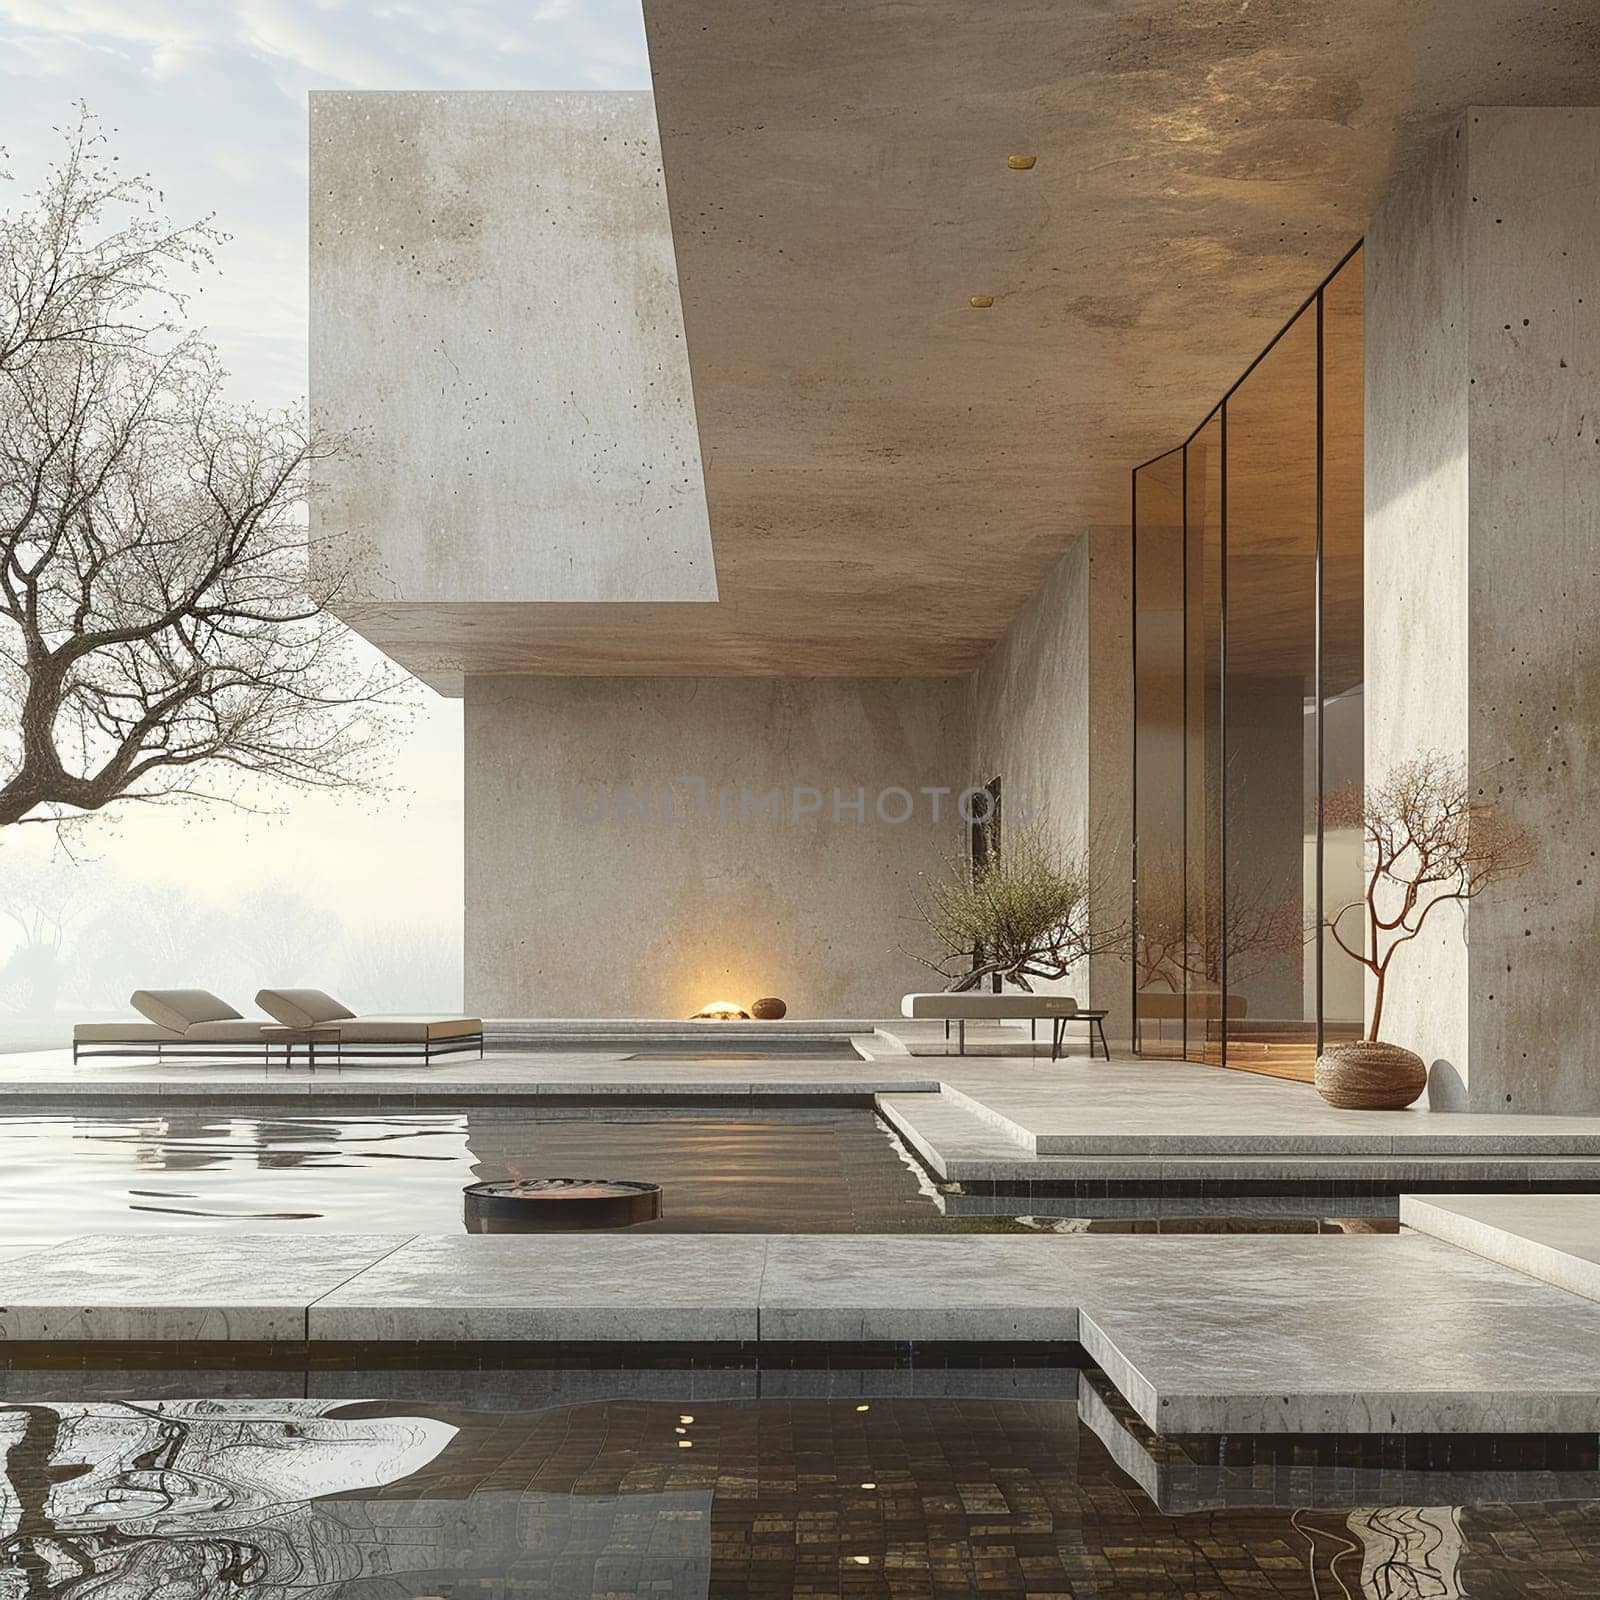 Architectural Masterpiece Showcasing Zen Minimalism, zen minimalism in peaceful architectural design.